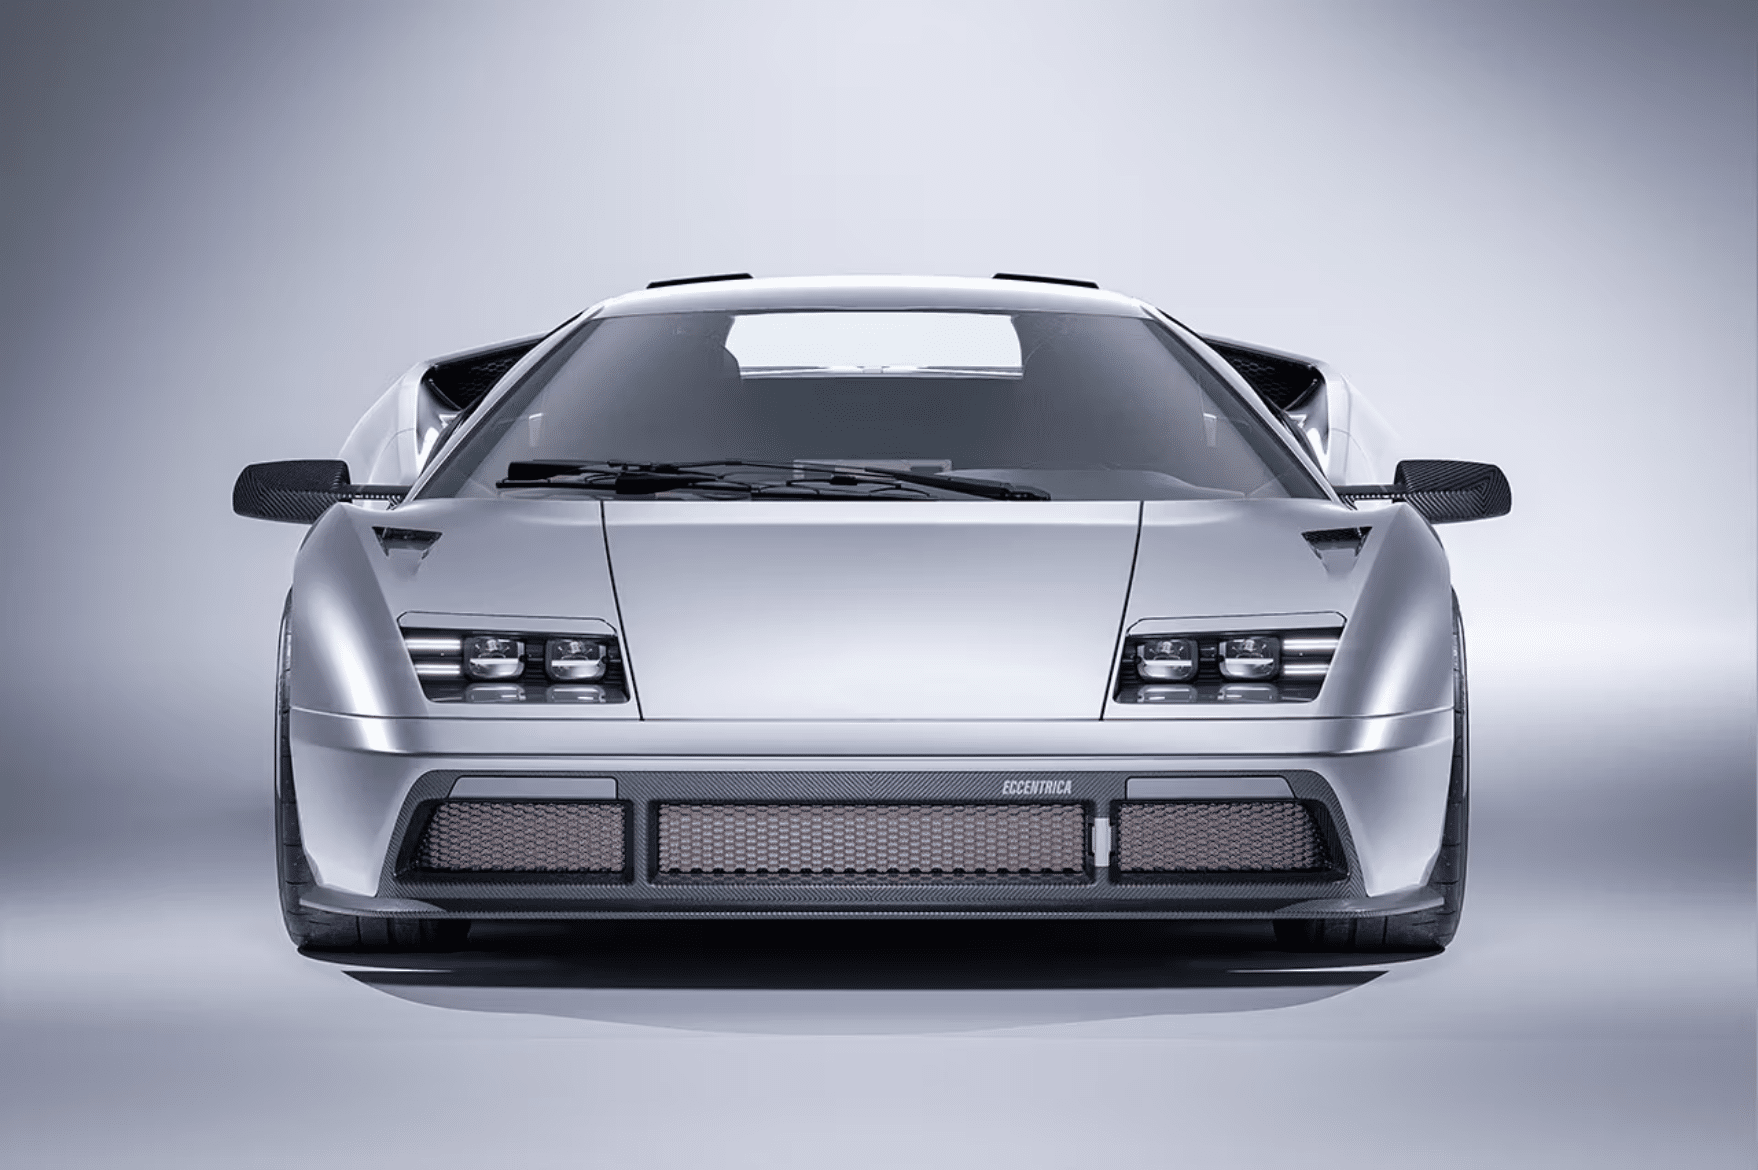 Lamborghini Diablo "Eccentrica" restomod